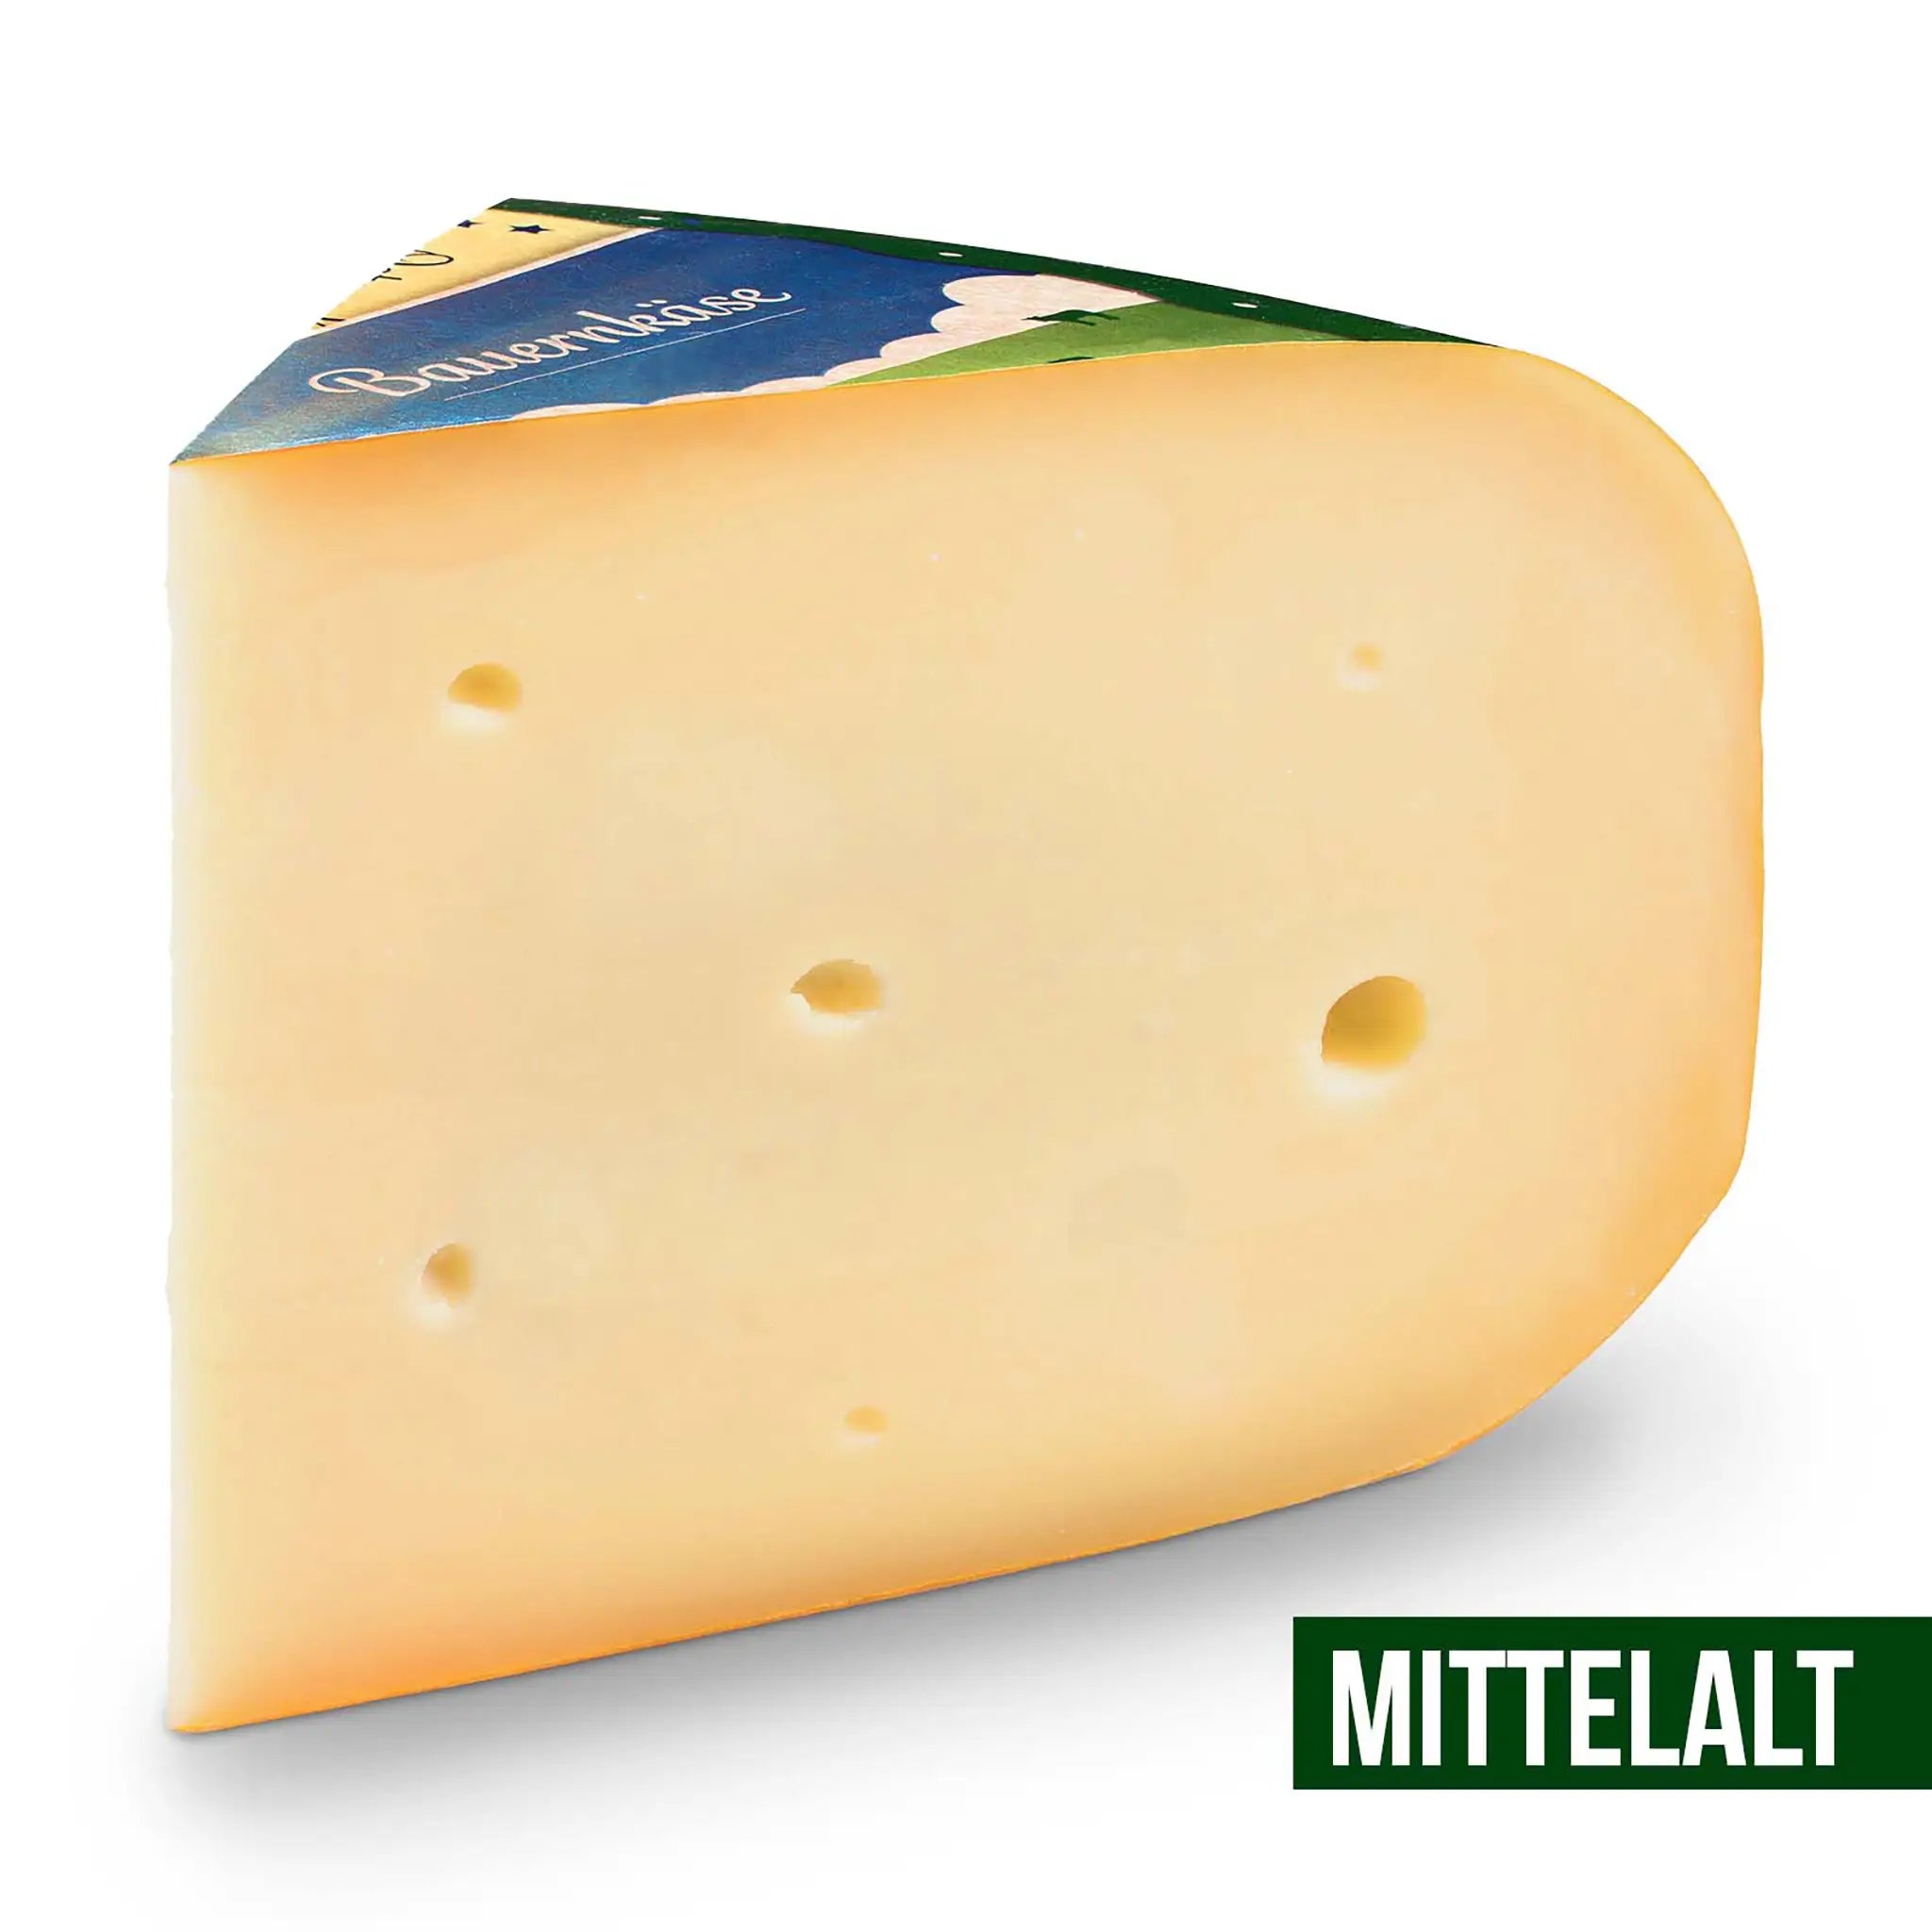 Das Käse-Wurst-Probierpaket